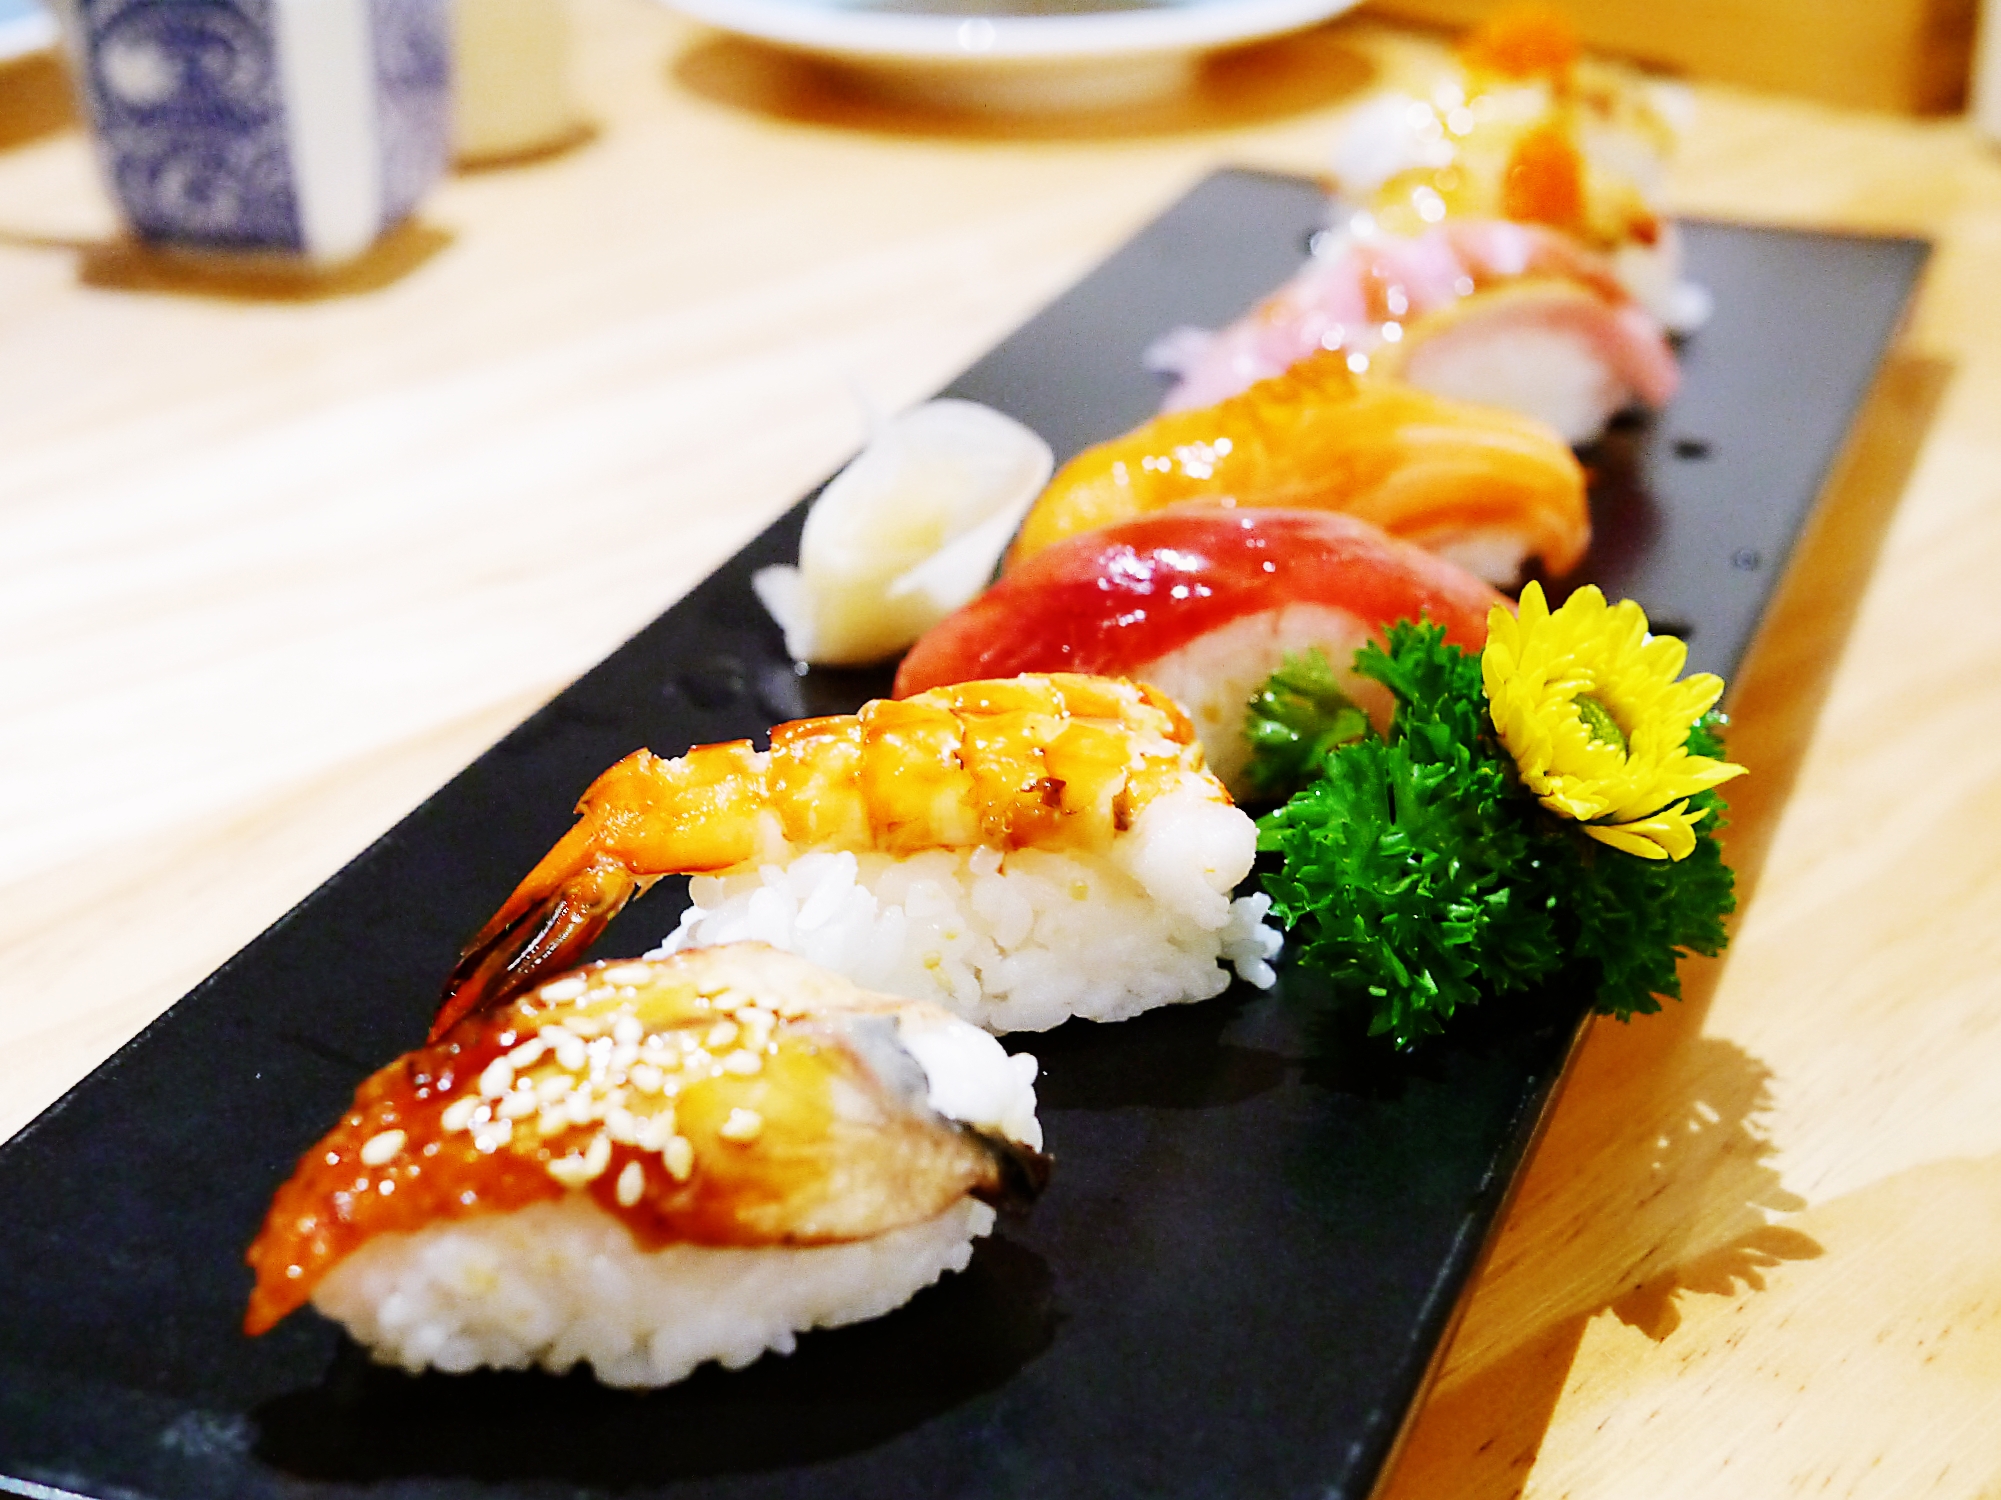 【主厨每日特选握寿司】拼盘里包含了六种寿司,匠心之作的寿司,不仅是